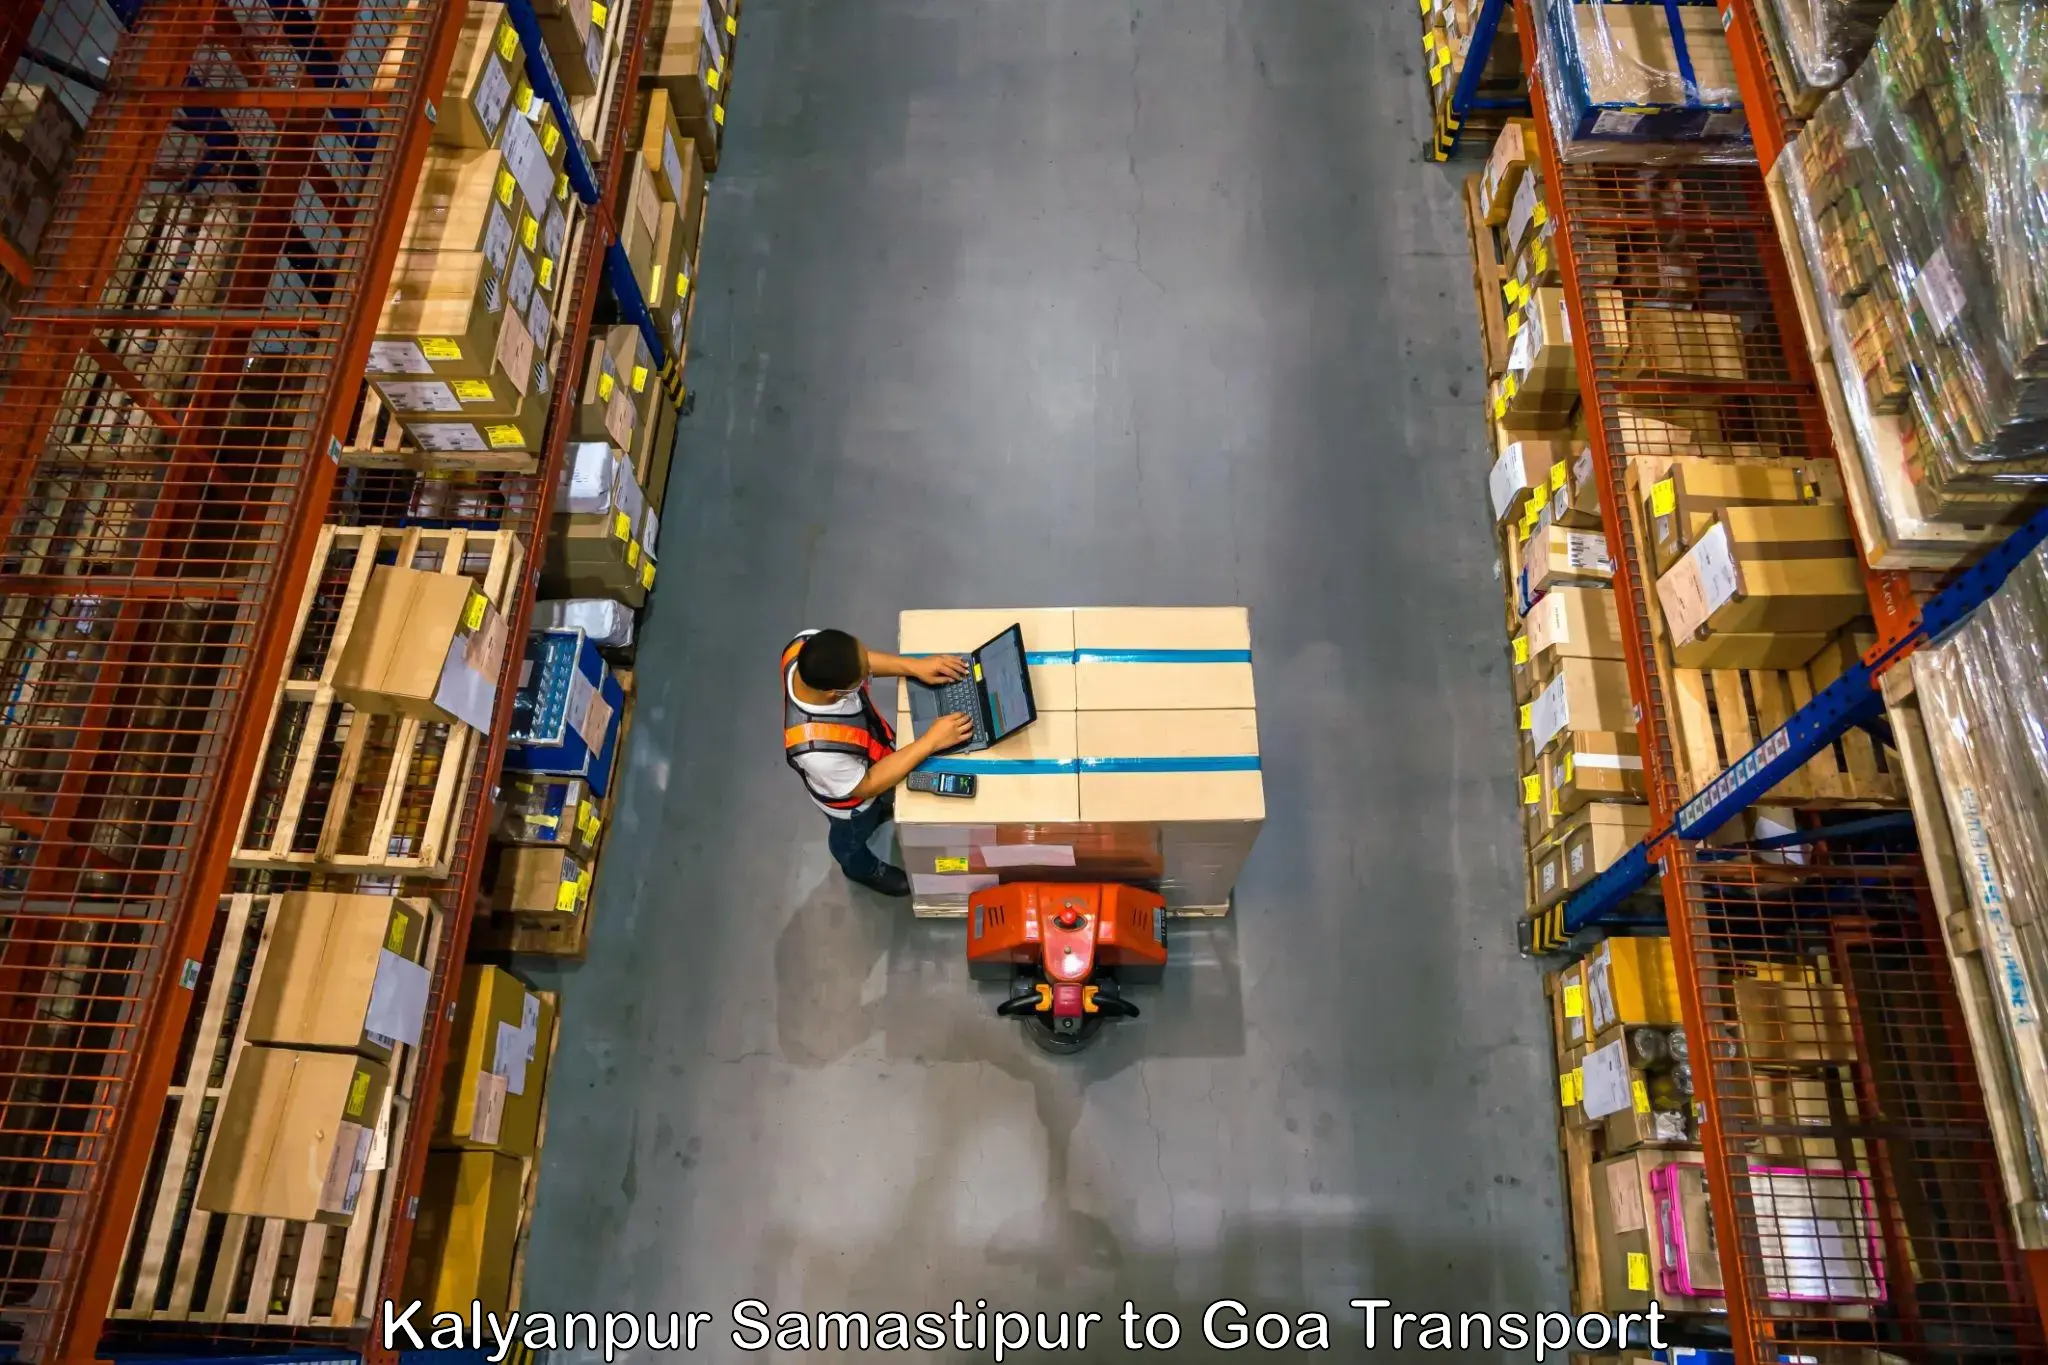 Furniture transport service Kalyanpur Samastipur to IIT Goa